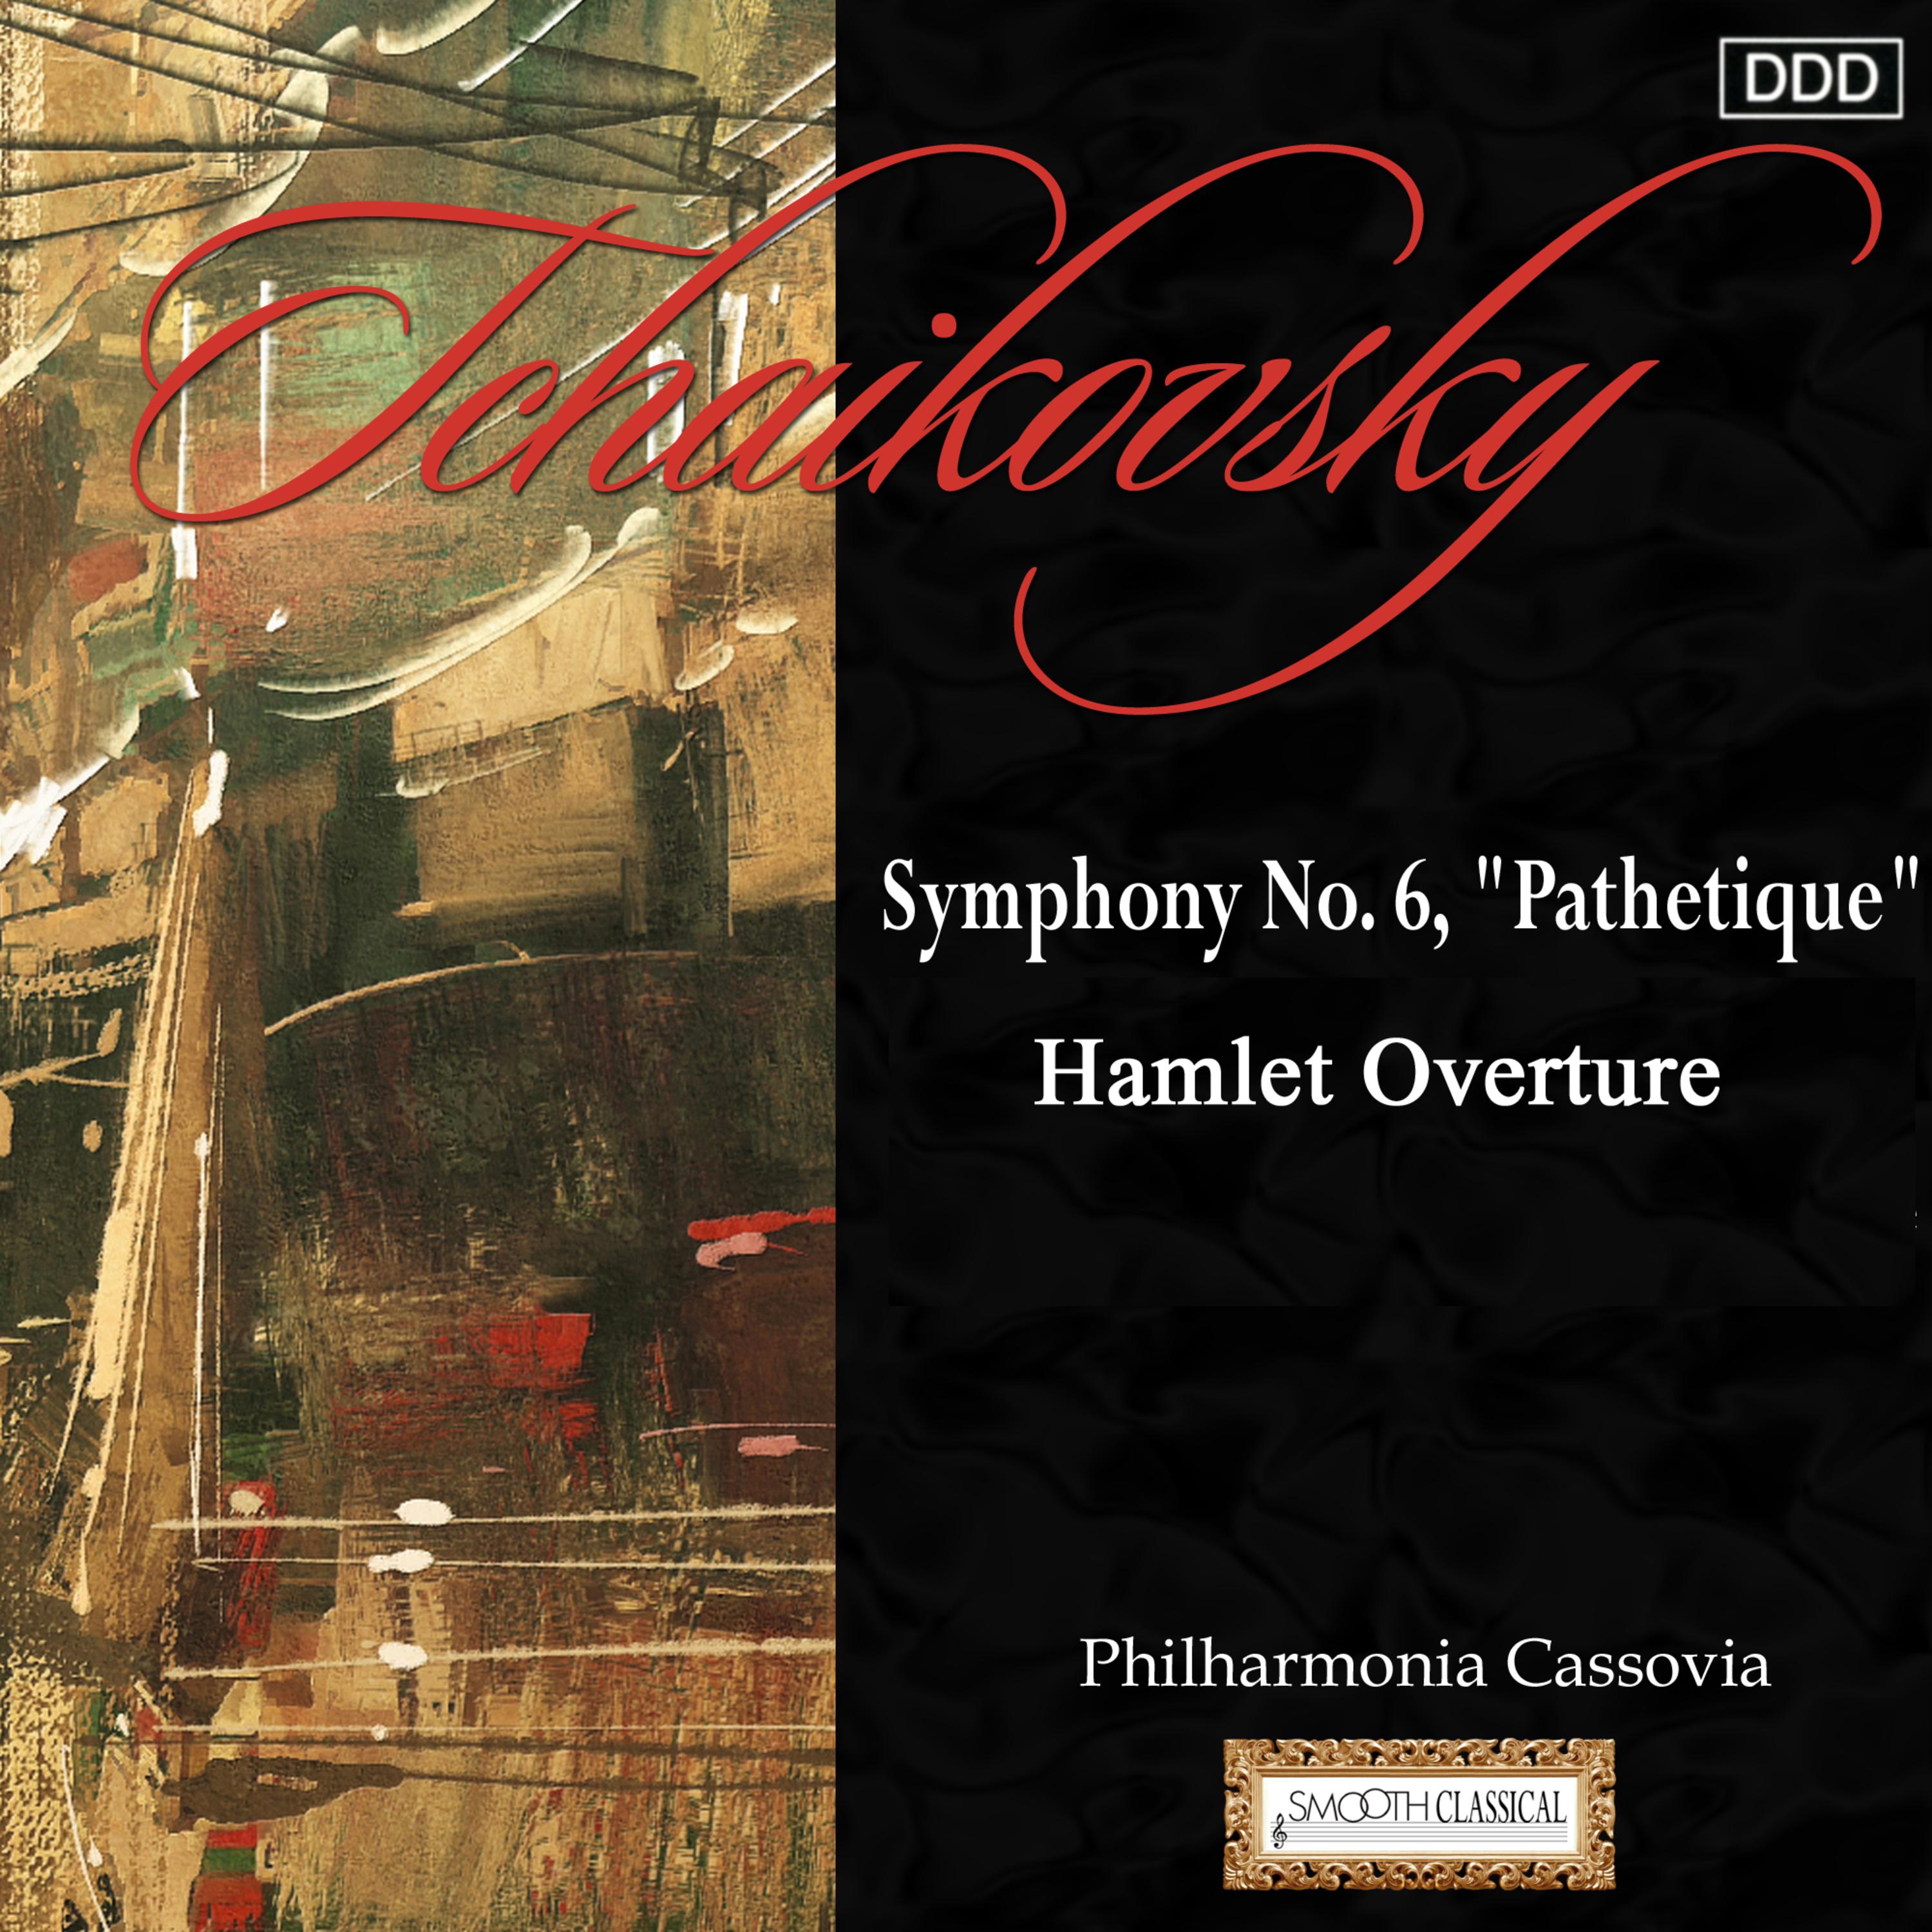 Tchaikovsky: Symphony No. 6 "Pathetique" - Hamlet Overture